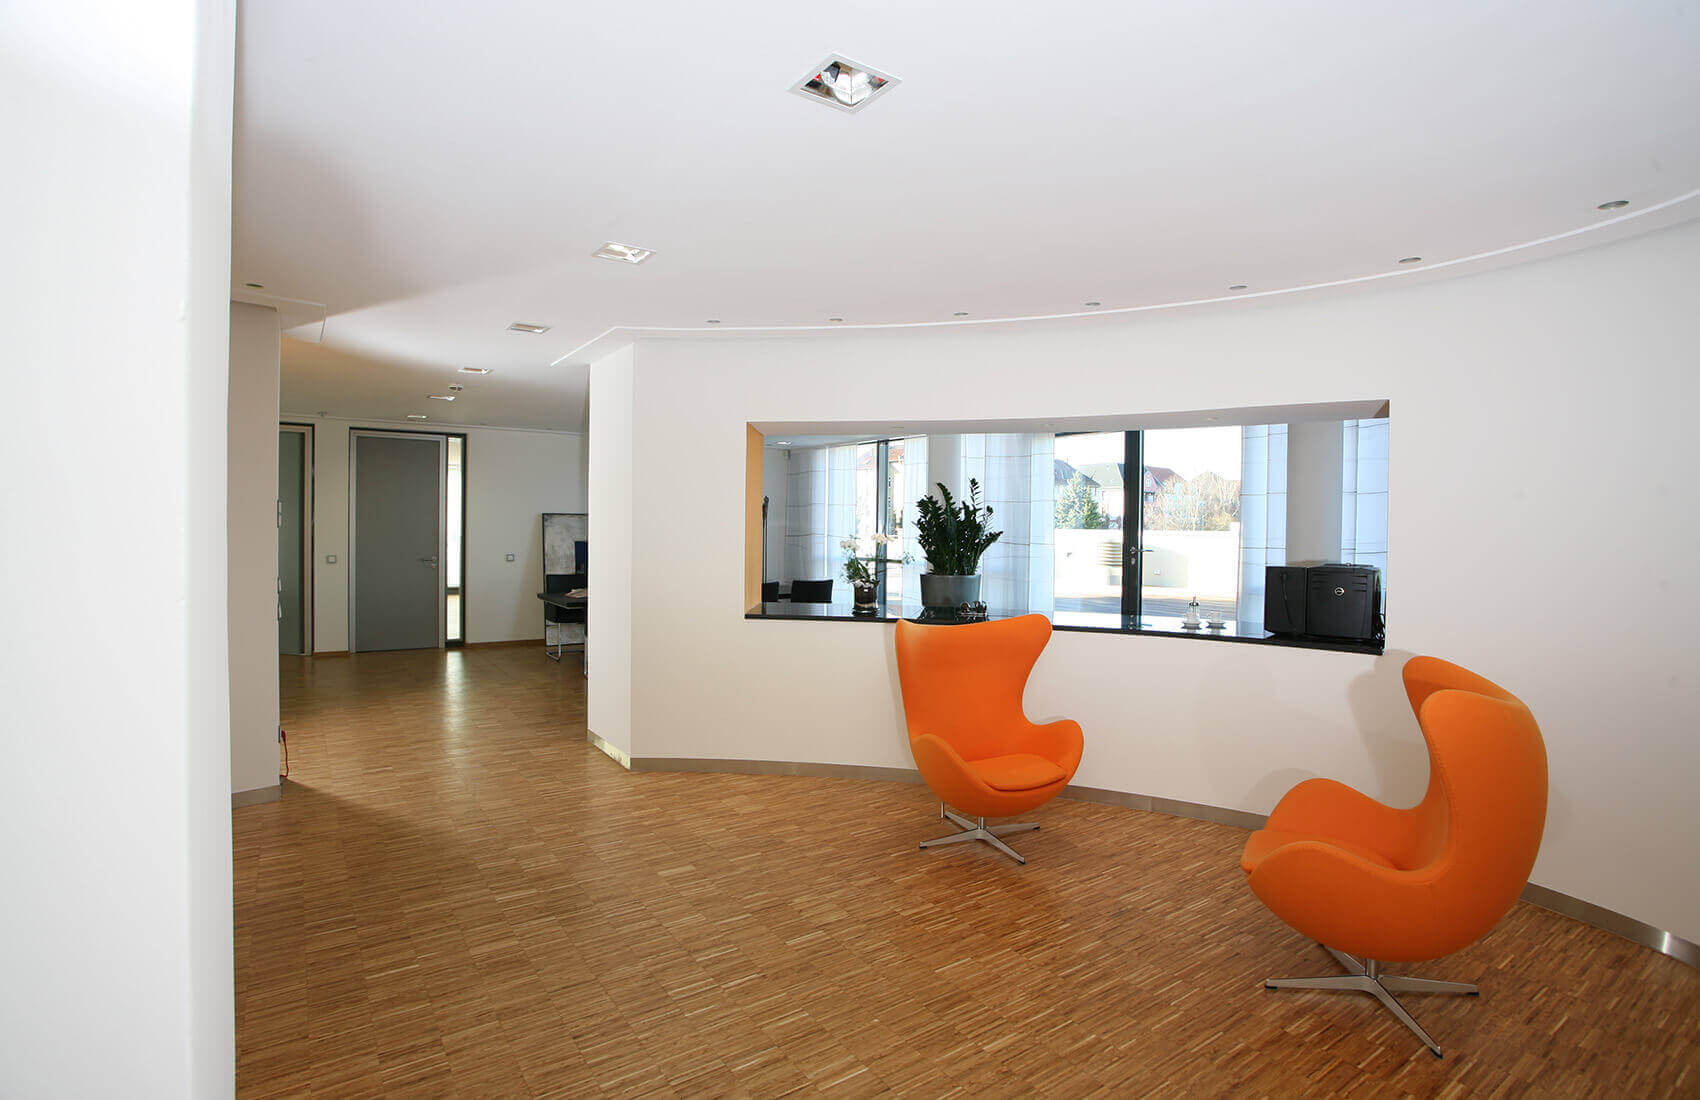 Sitzbereich im Bürogebäude | Büroarchitektur, Möbeldesign und Innenarchitektur